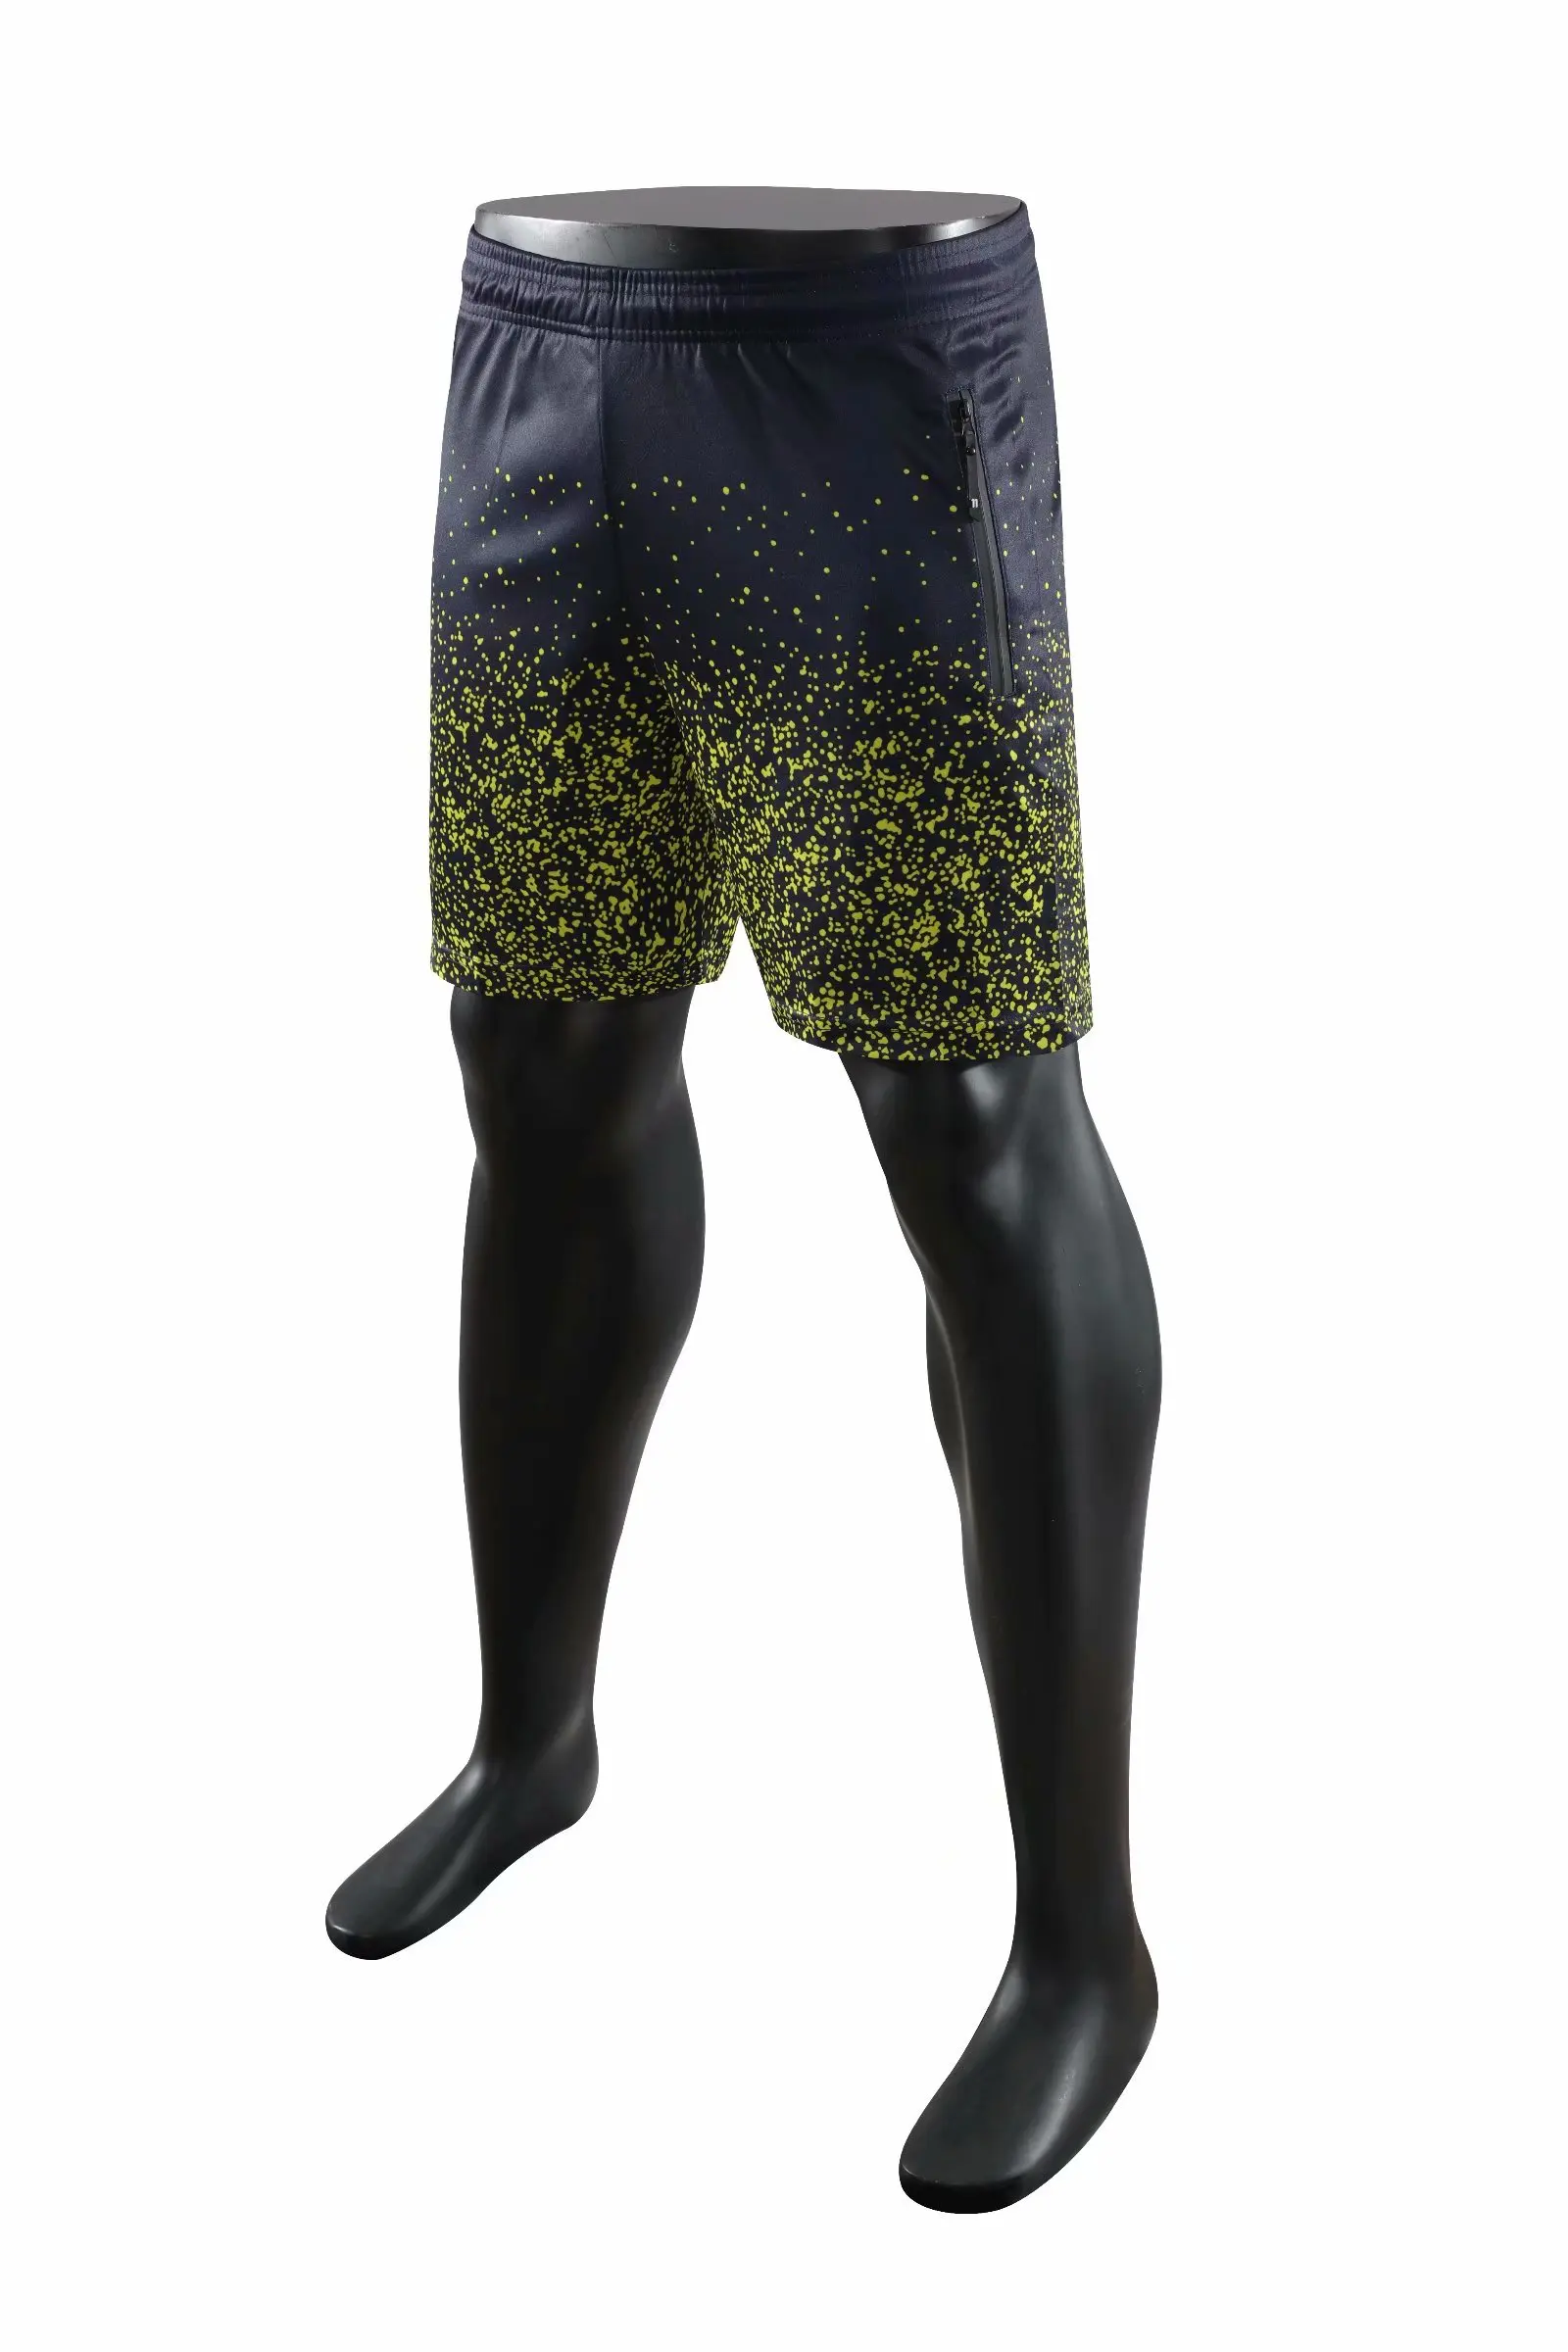 Популярные мужские wo мужские профессиональные камуфляжные футбольные шорты для тенниса, бега, спорта на открытом воздухе, тренировок, фитнеса, футбола, шорты с карманами на молнии - Цвет: A-007 shorts